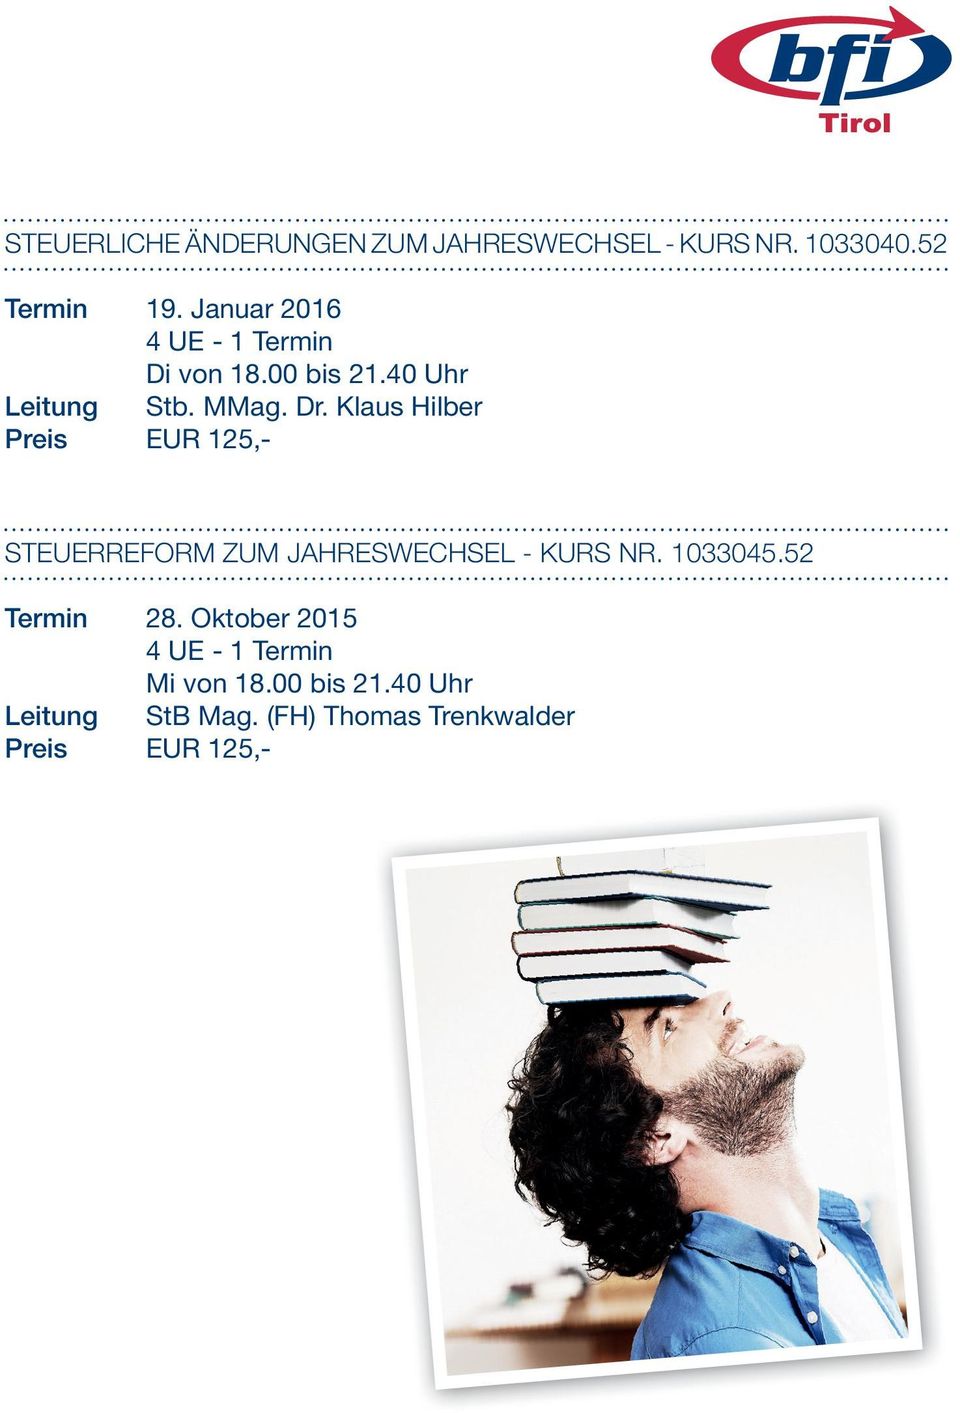 Klaus Hilber Preis EUR 125,- STEUERREFORM ZUM JAHRESWECHSEL - KURS NR. 1033045.